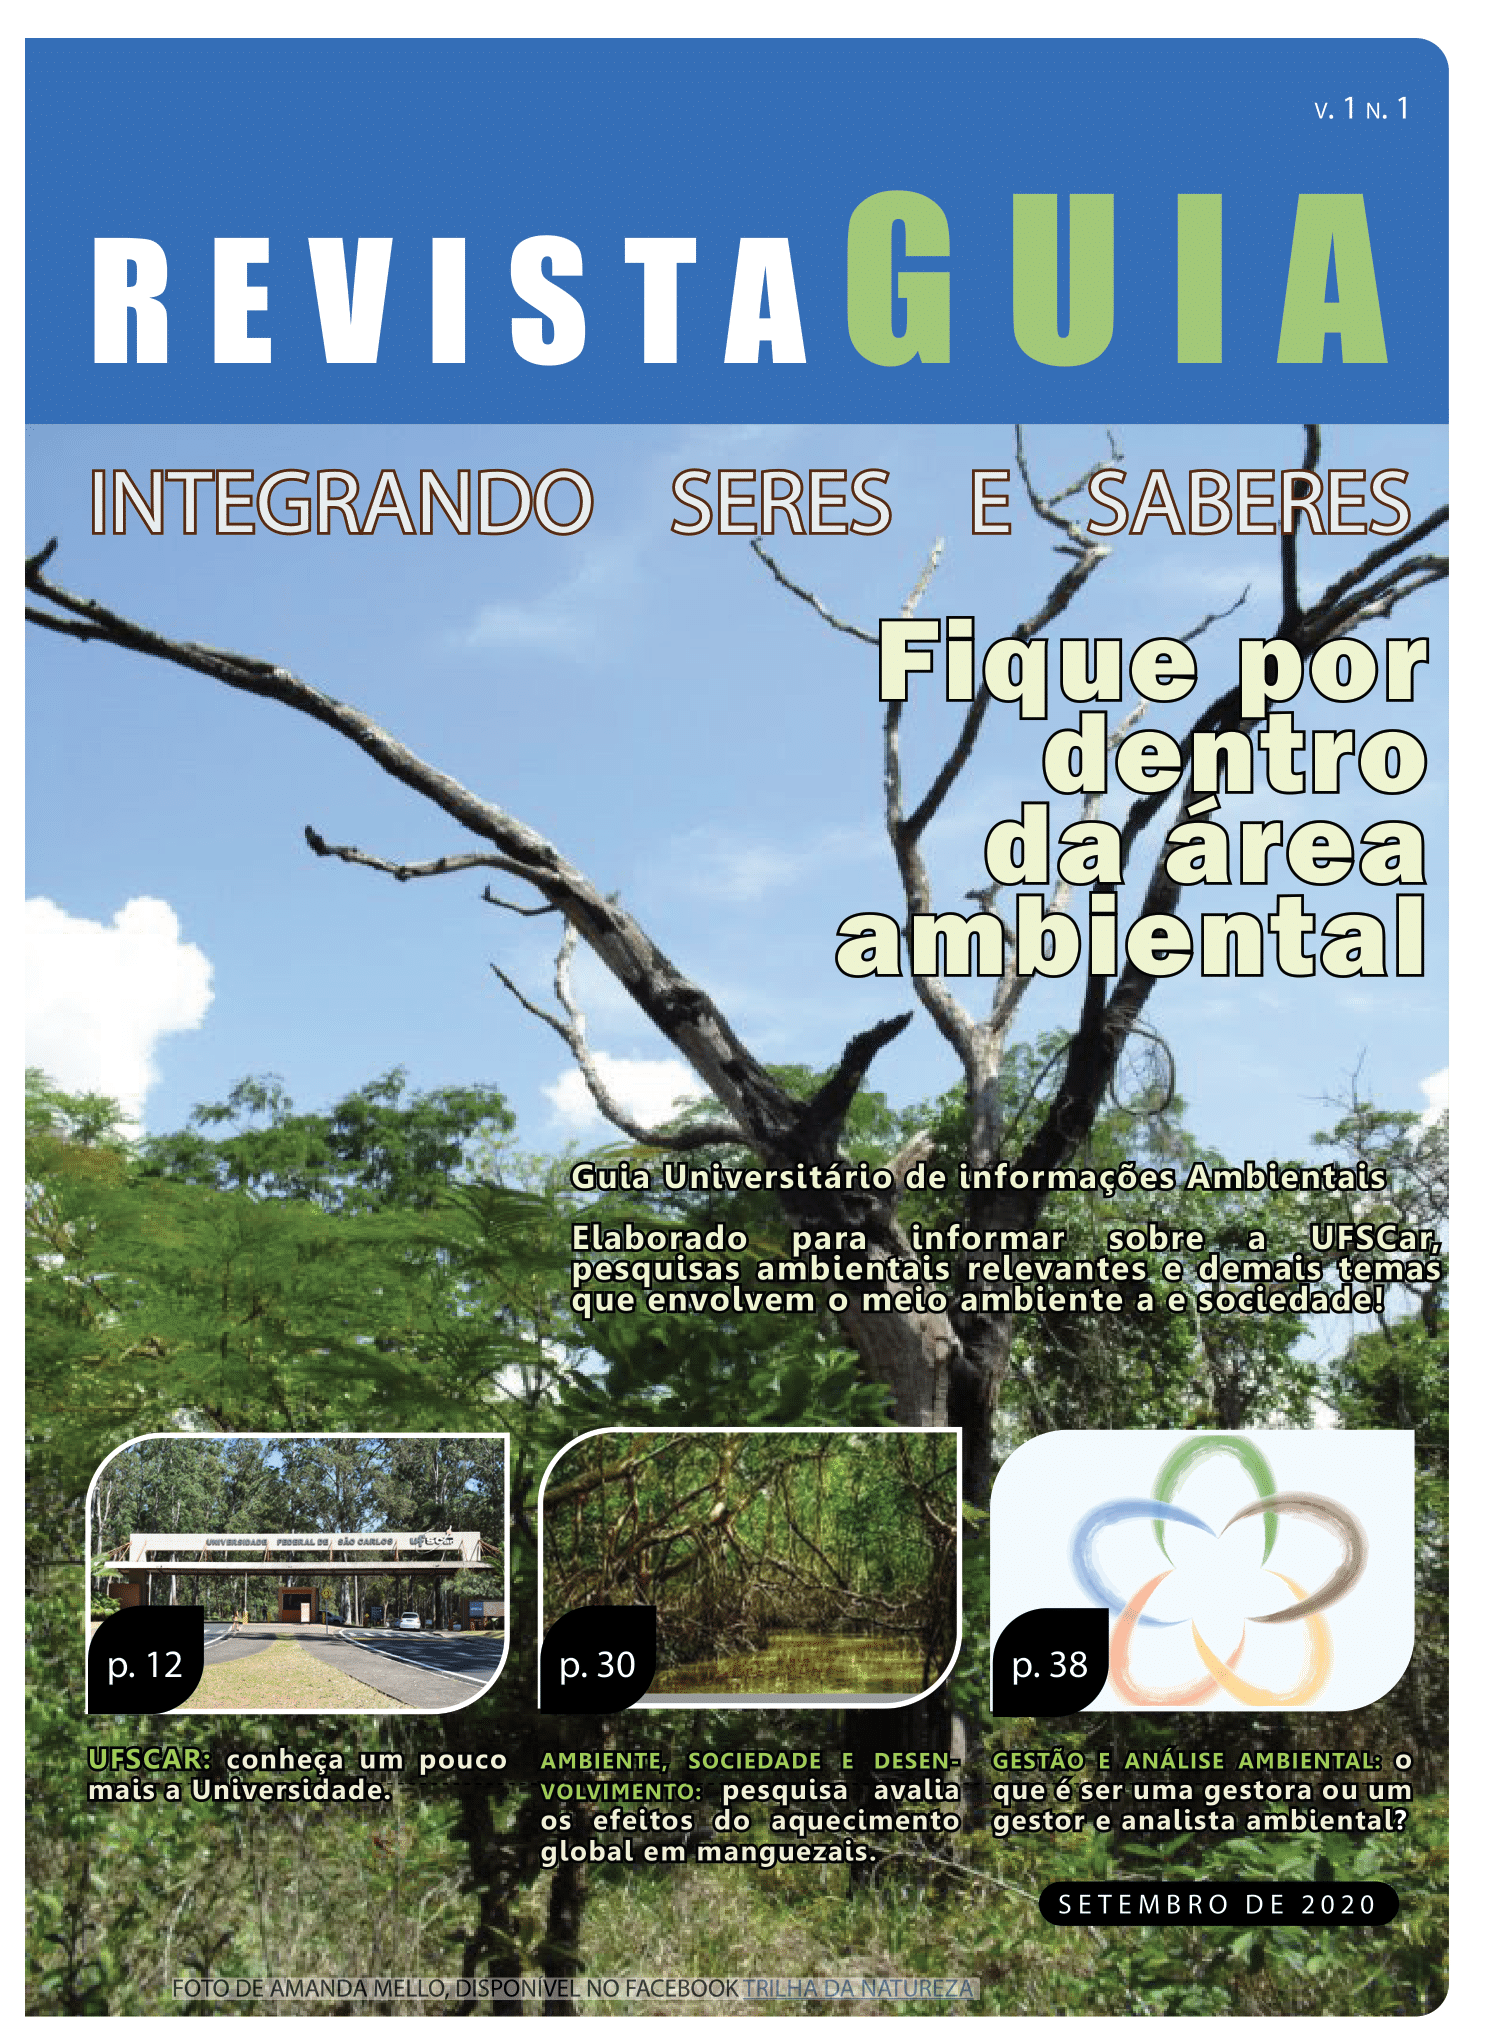 					Visualizar v. 1 n. 1 (2020): Revista GUIA - Integrando Seres e Saberes
				